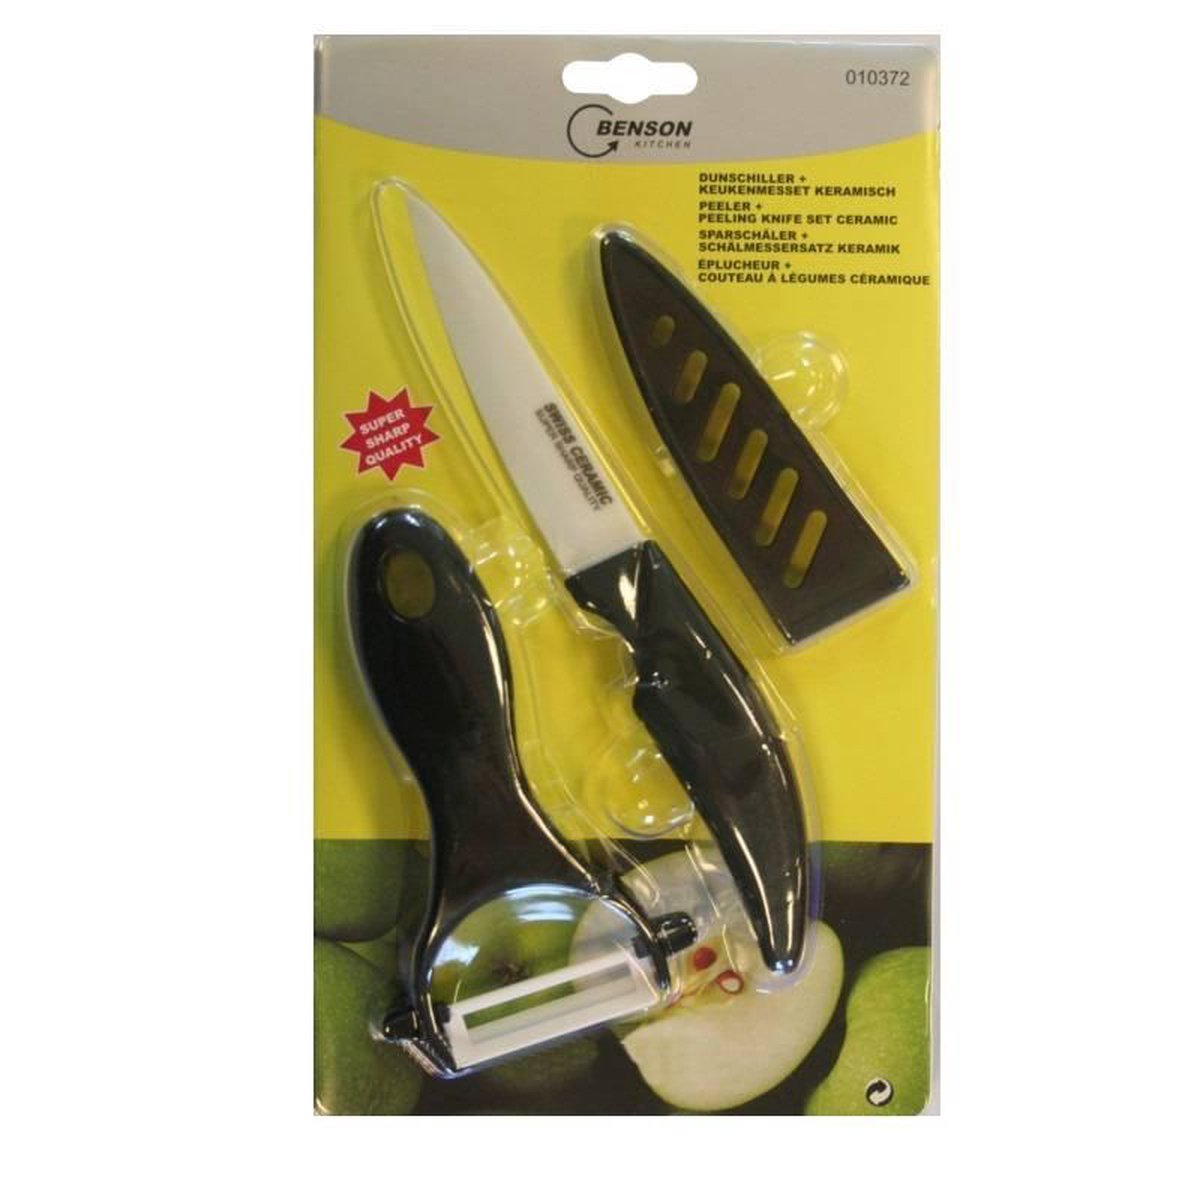 Éplucheur et couteau de cuisine en céramique noir | bol.com